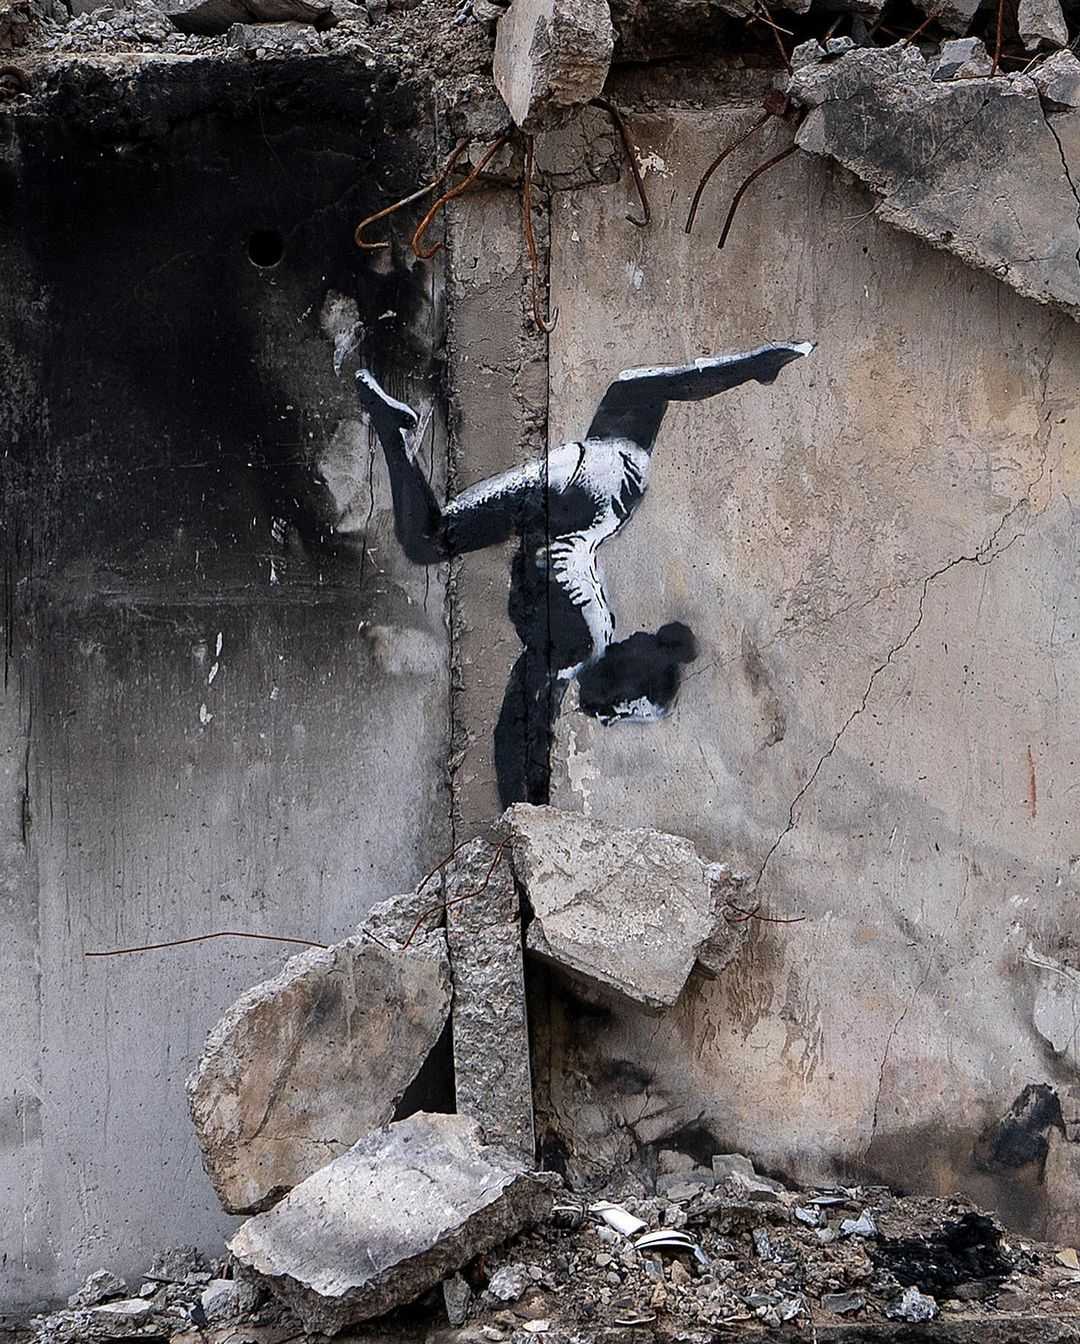 Na snÃƒÂ­mke dielo umelca Banksyho na budove zniÃ„Âenej ruskÃƒÂ½m ostreÃ„Â¾ovanÃƒÂ­m.